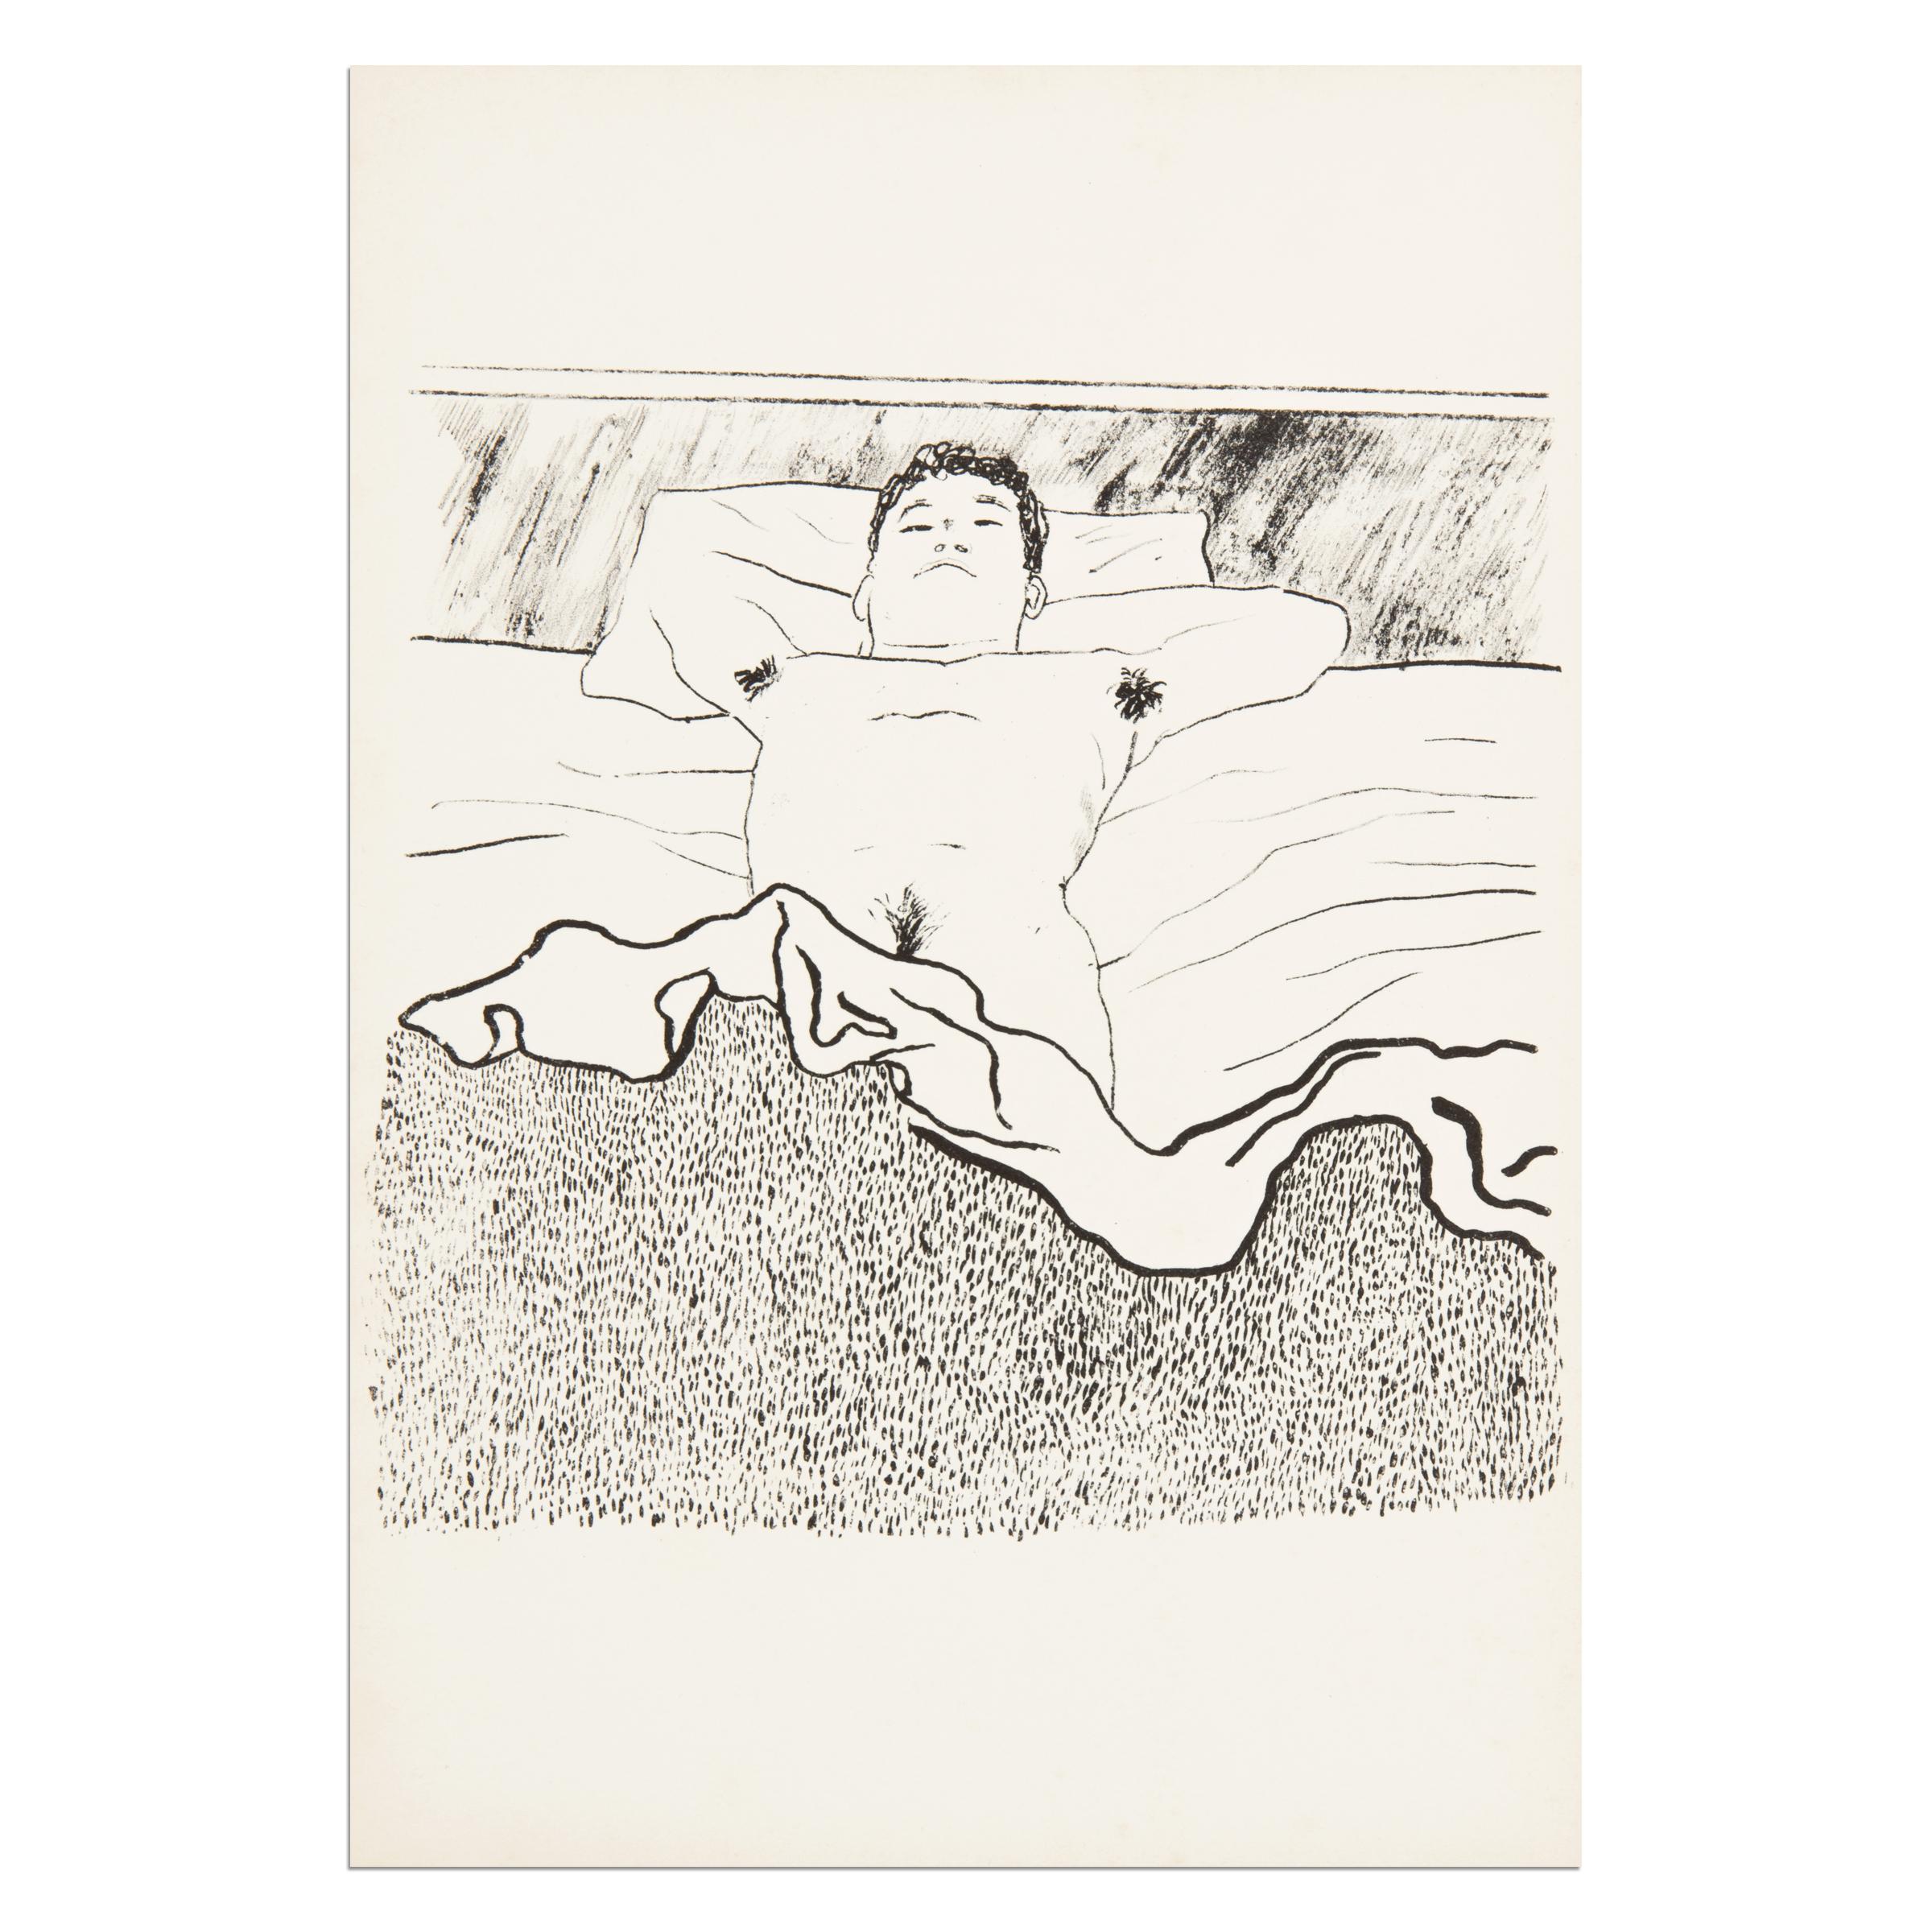 David Hockney
Ohne Titel (aus Geh durch den Spiegel), 1966
Medium: Lithographie auf Papier
Abmessungen: 14 7/10 × 10 1/10 Zoll (37,3 × 25,6 cm)
Auflage von 250: Nicht signiert, nicht nummeriert
Zustand: Sehr gut (nie gerahmt)